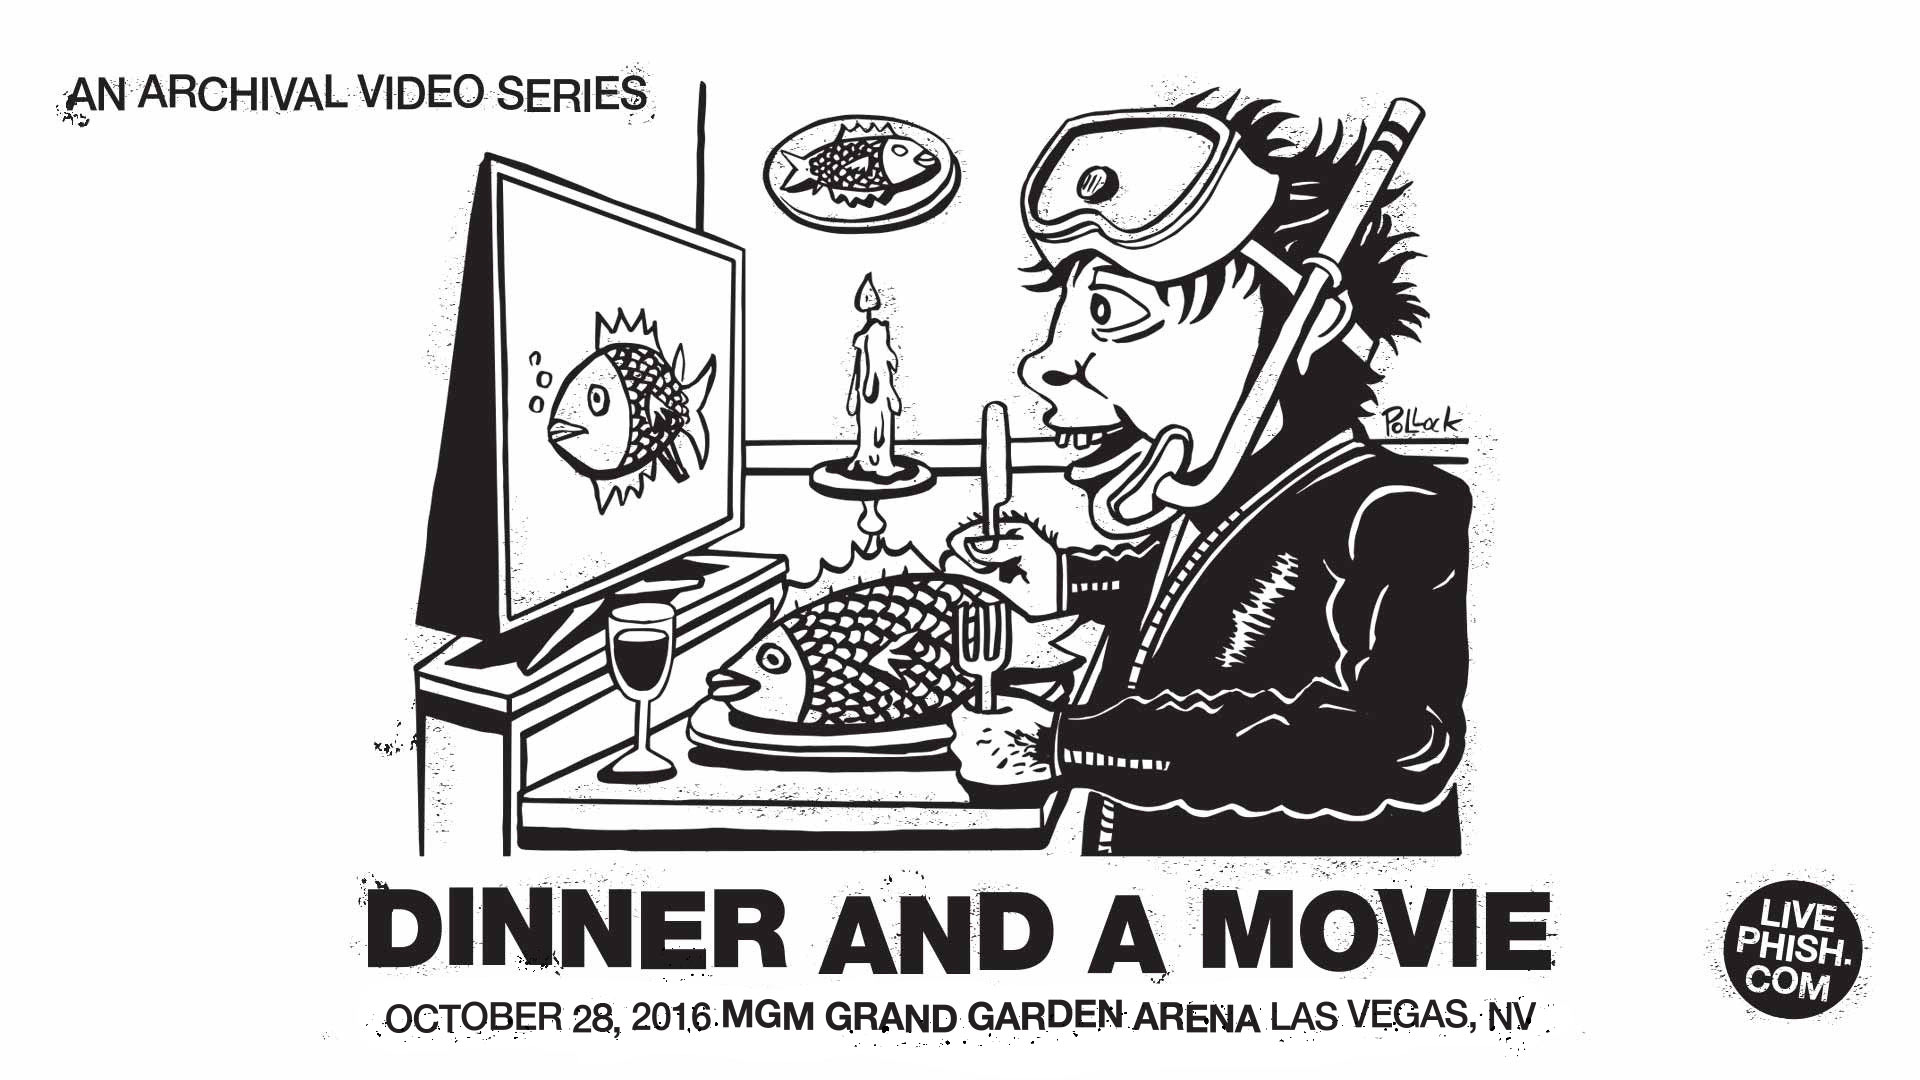 Dinner And A Movie Ep 6 10 28 16 Las Vegas Nv Phish